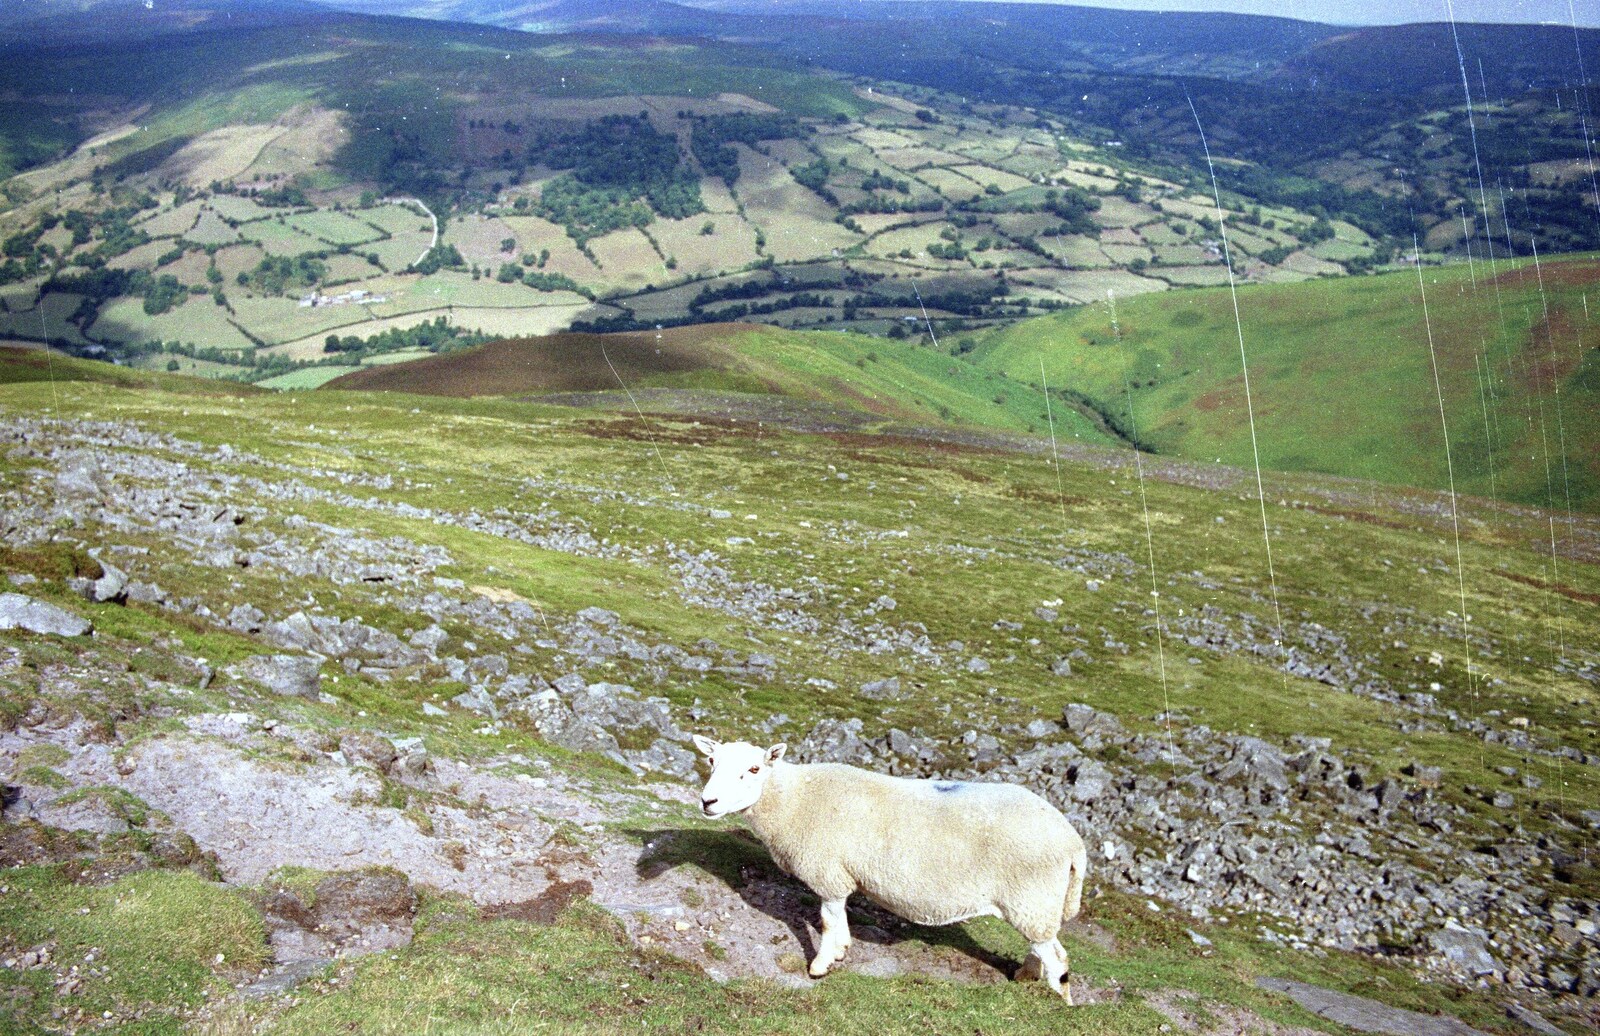 The sheep, again from A Walk in the Brecon Beacons, Bannau Brycheiniog, Wales - 5th August 1990